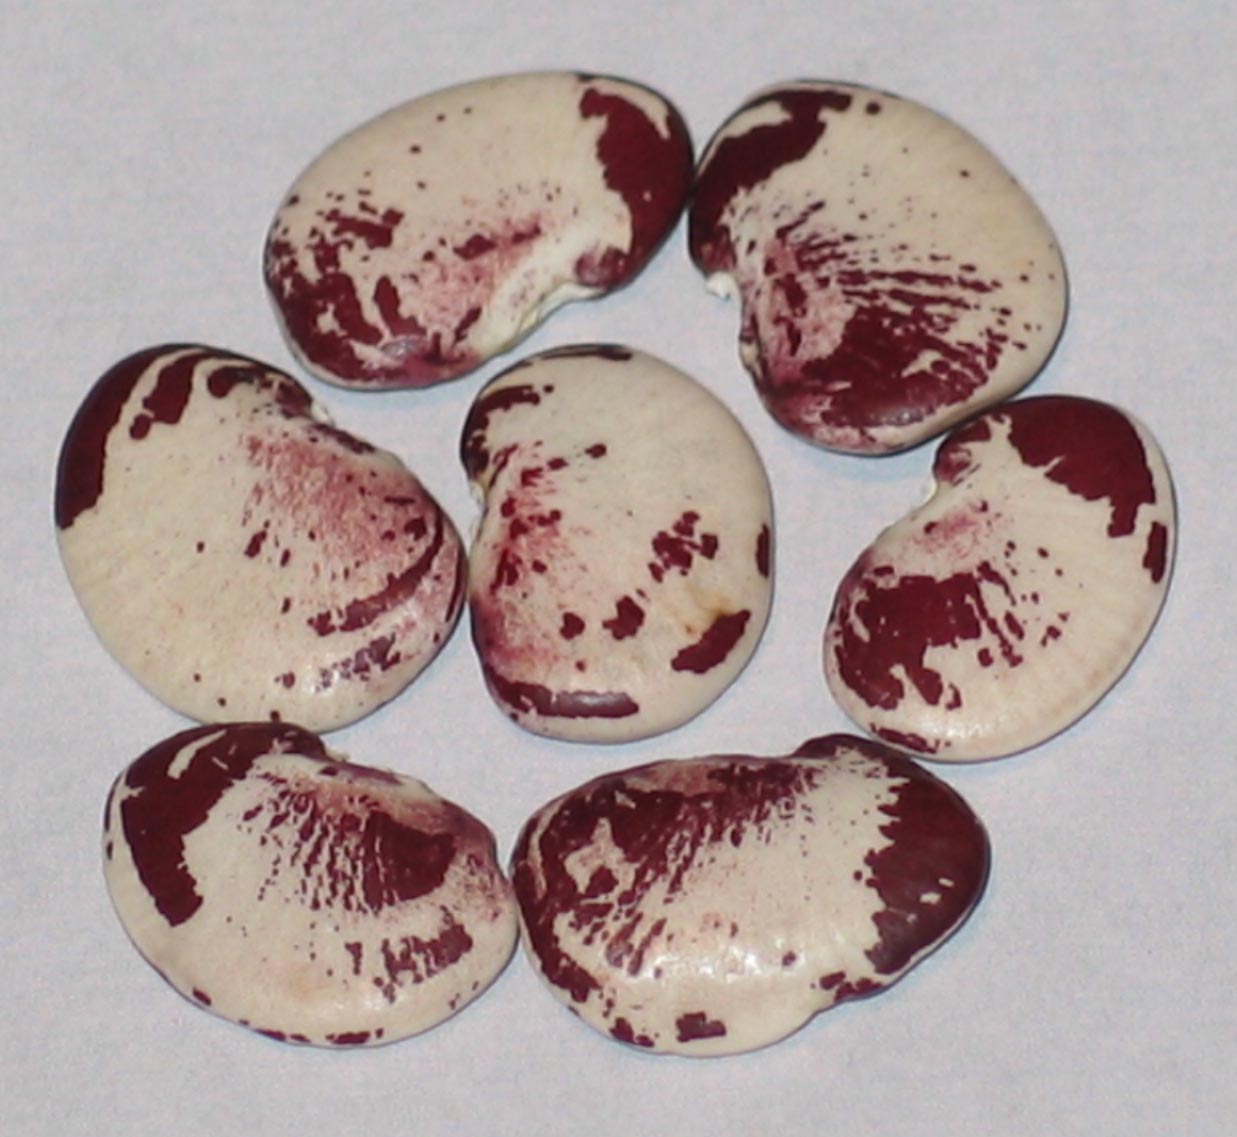 image of Madagascar beans